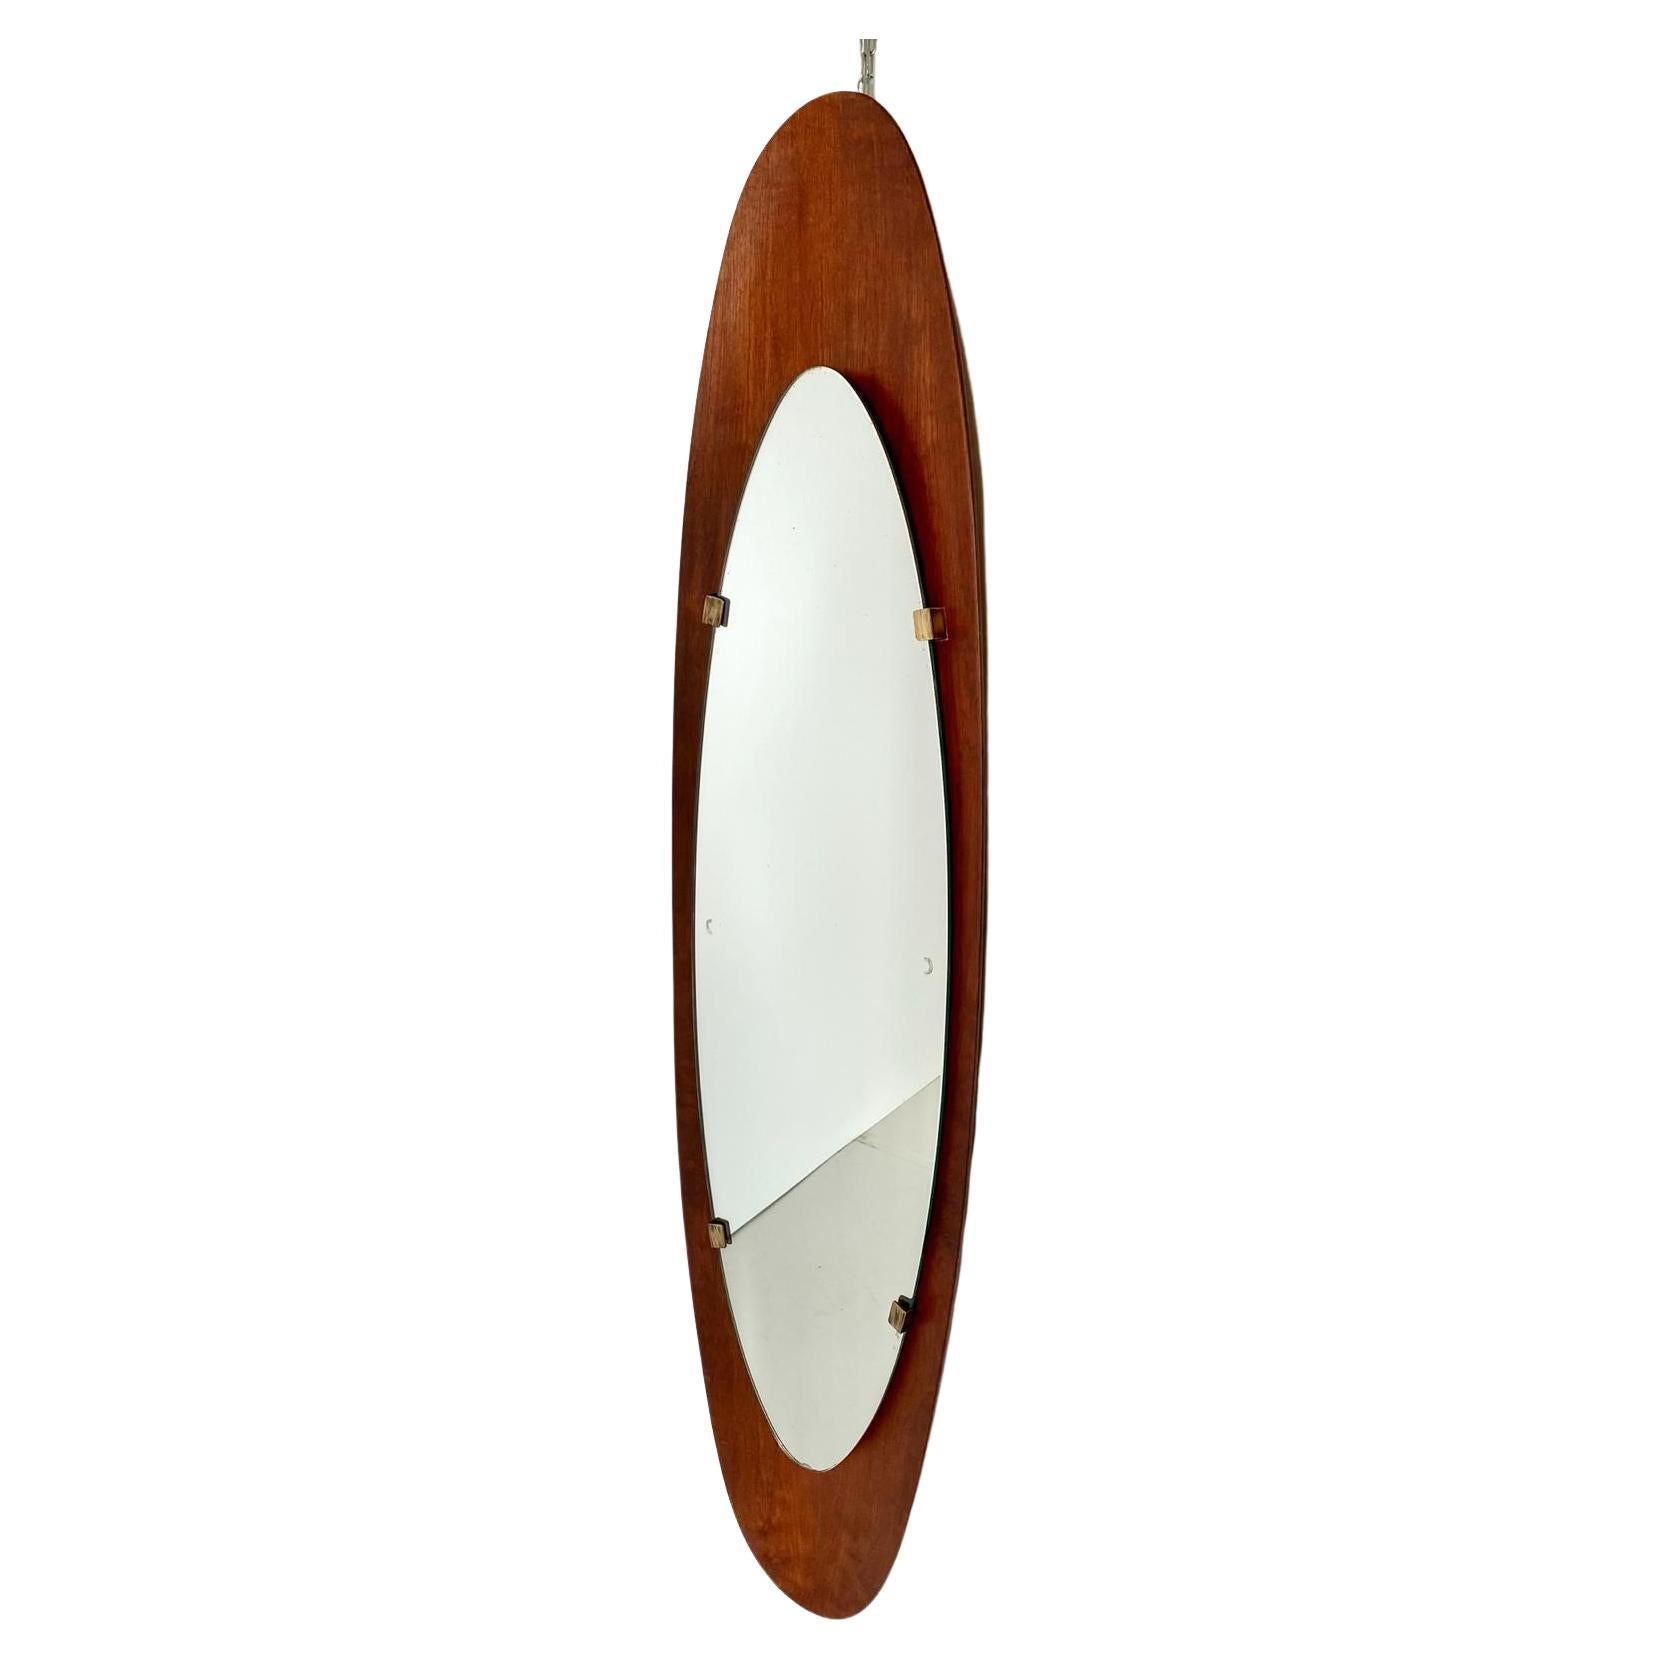 Grande specchio ovale in legno ricurvo degli anni 50. Ideato dal duo Campo & Graffi per Stilcasa Italia. 
Ferma specchio in ottone. Struttura in legno completamente restaurata. In ottime condizioni con solo piccoli segni del tempo. Vetro orginale.